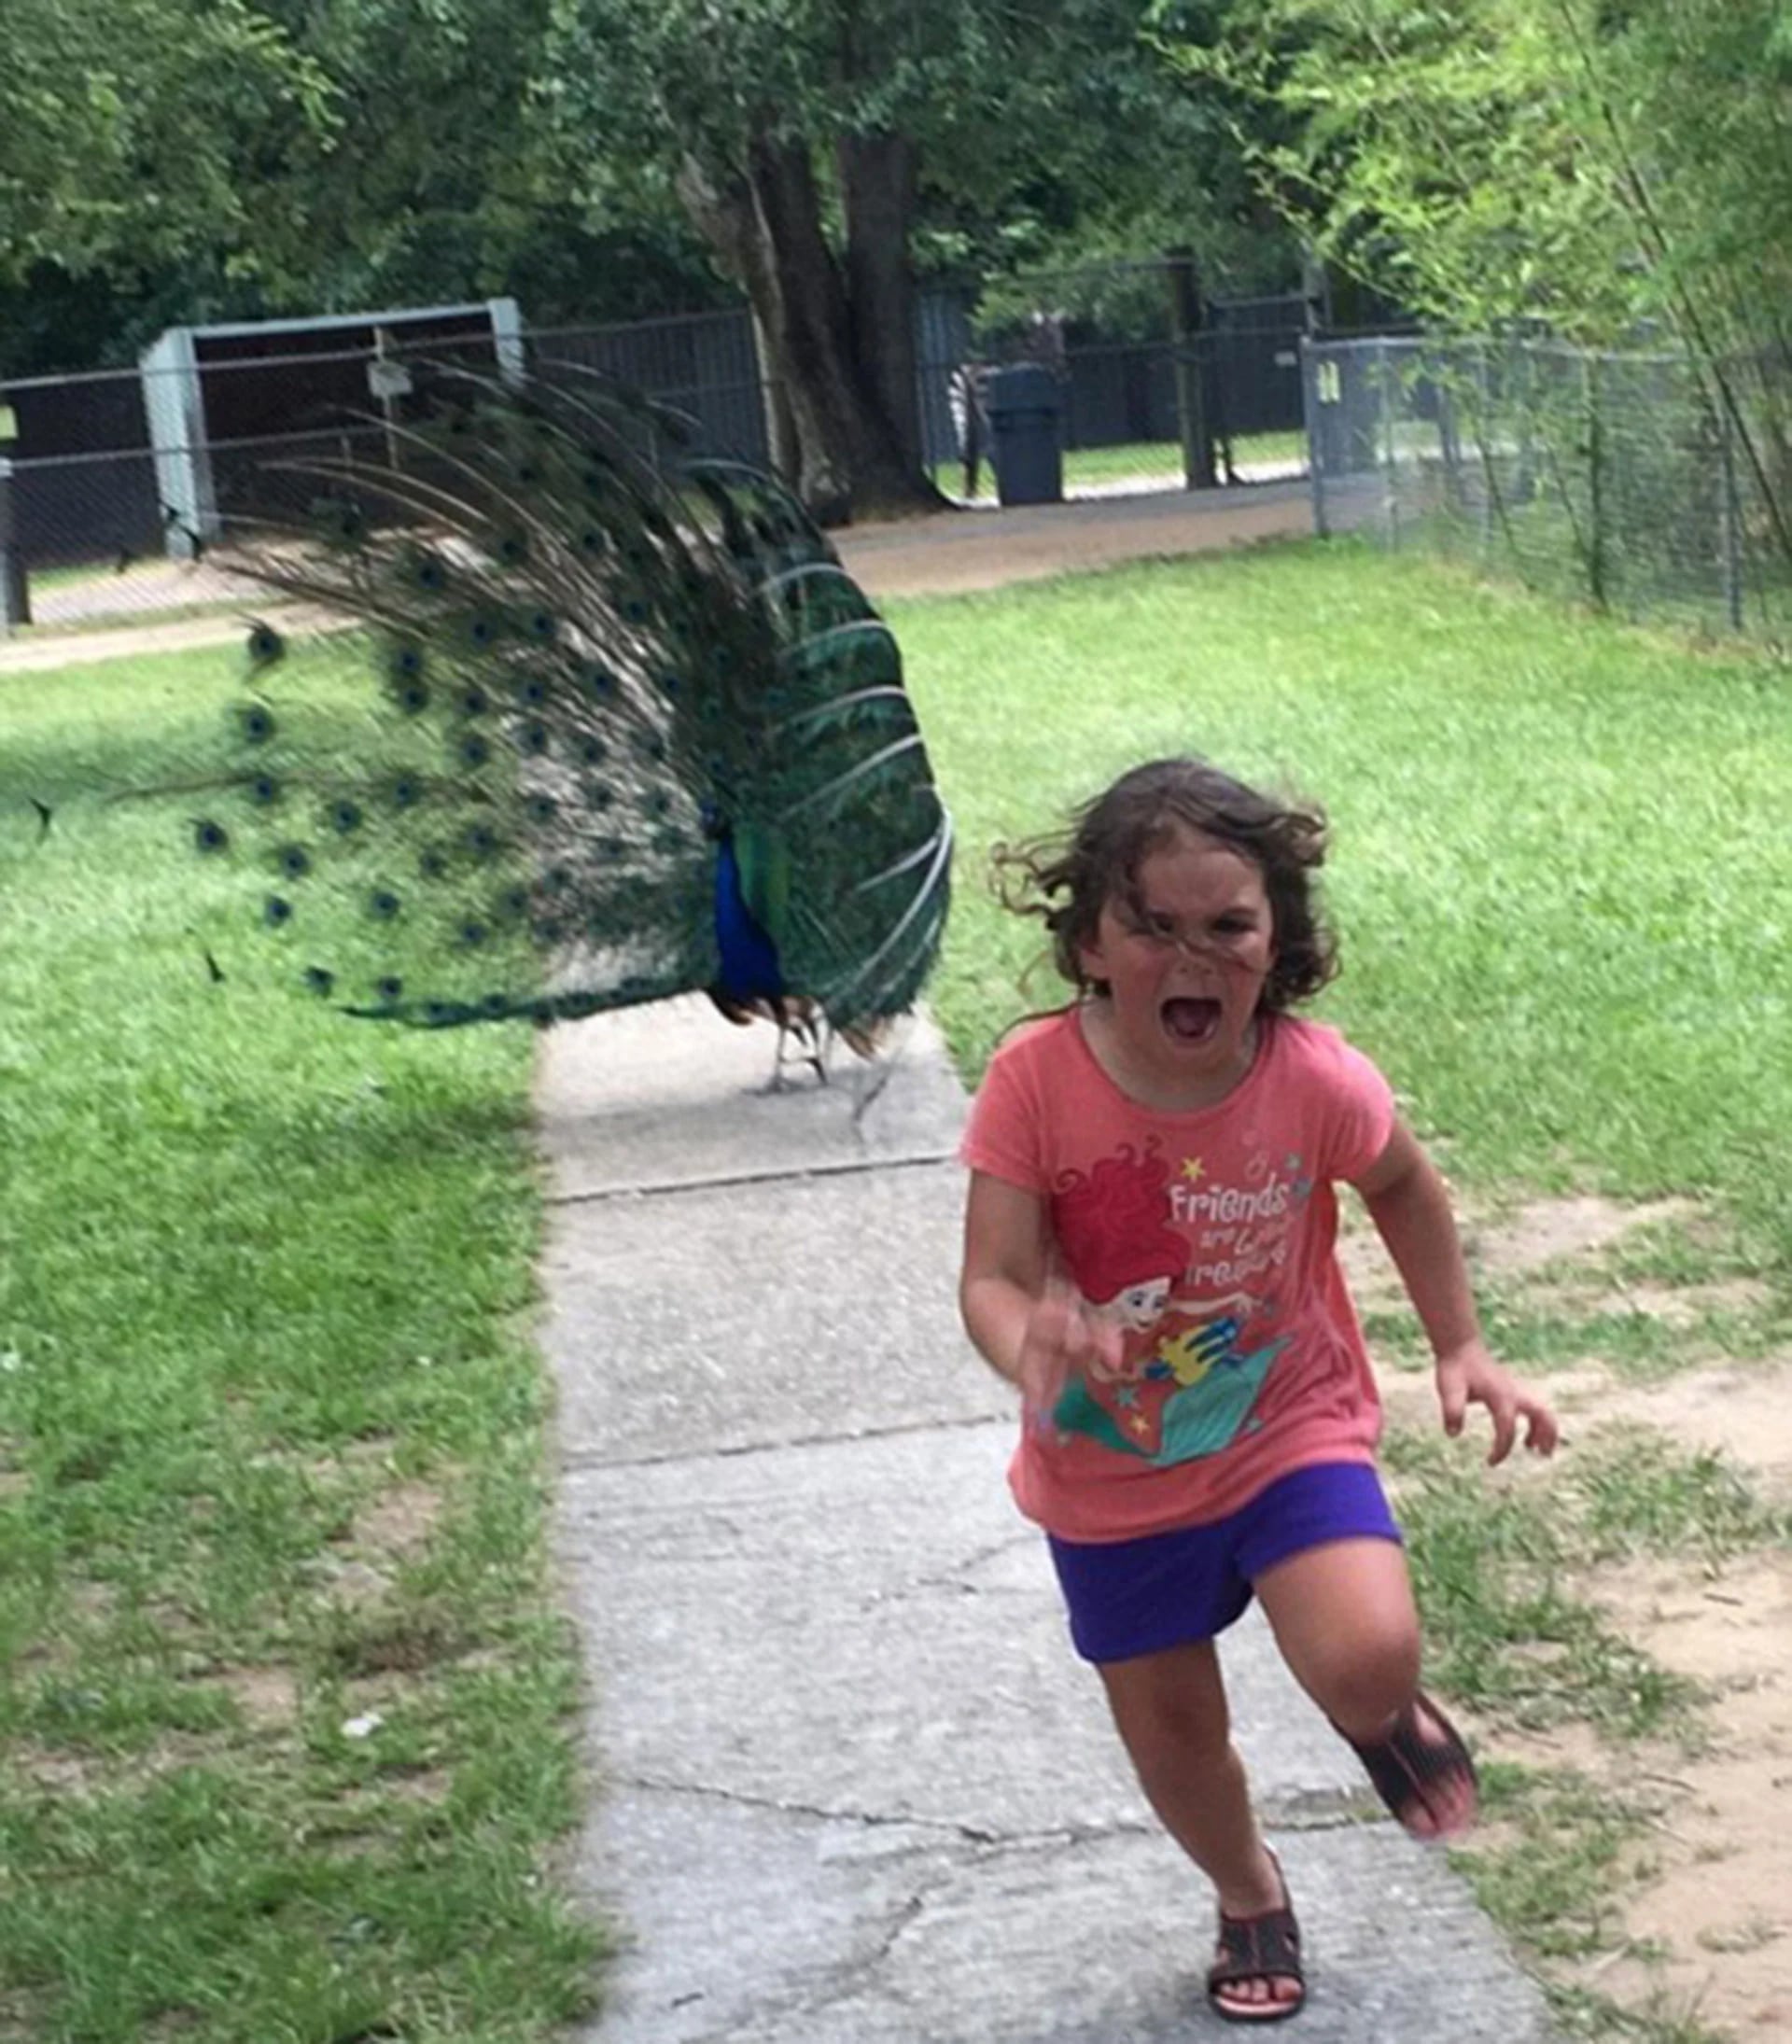 La pequeña corre asustada ante la presencia de un pavo real. La imagen se viralizó y se convirtió en meme